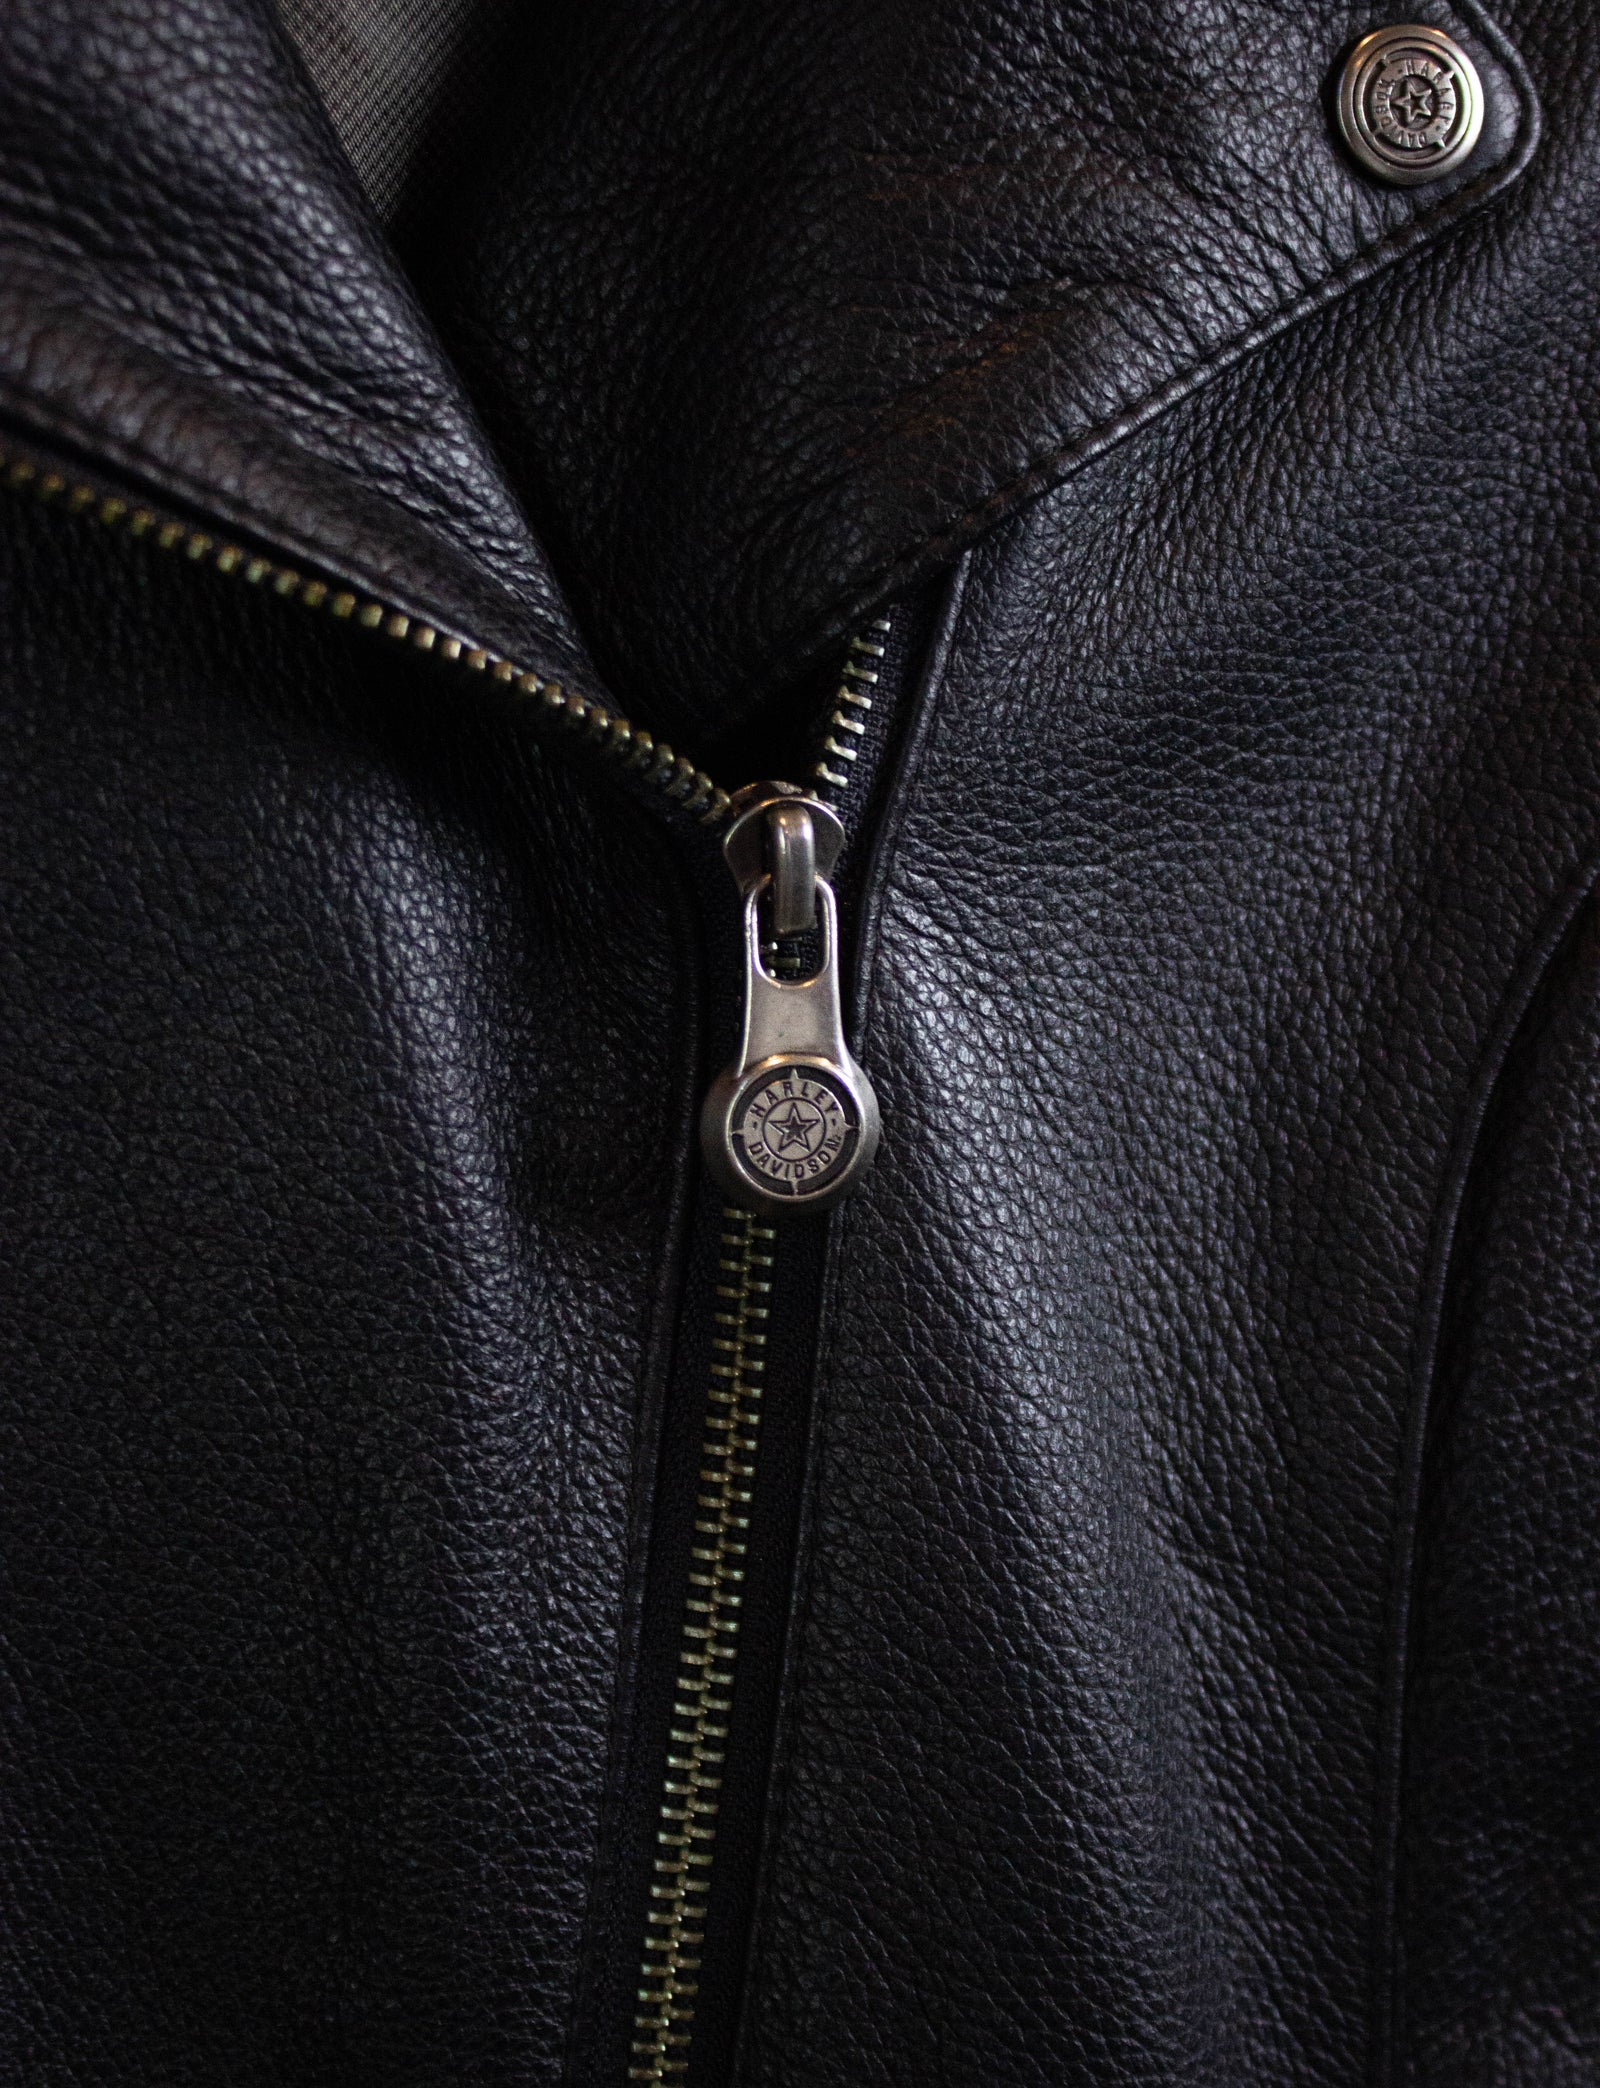 HARLEY DAVIDSON Leather Embroidered Logo Biker Handbag Shoulder